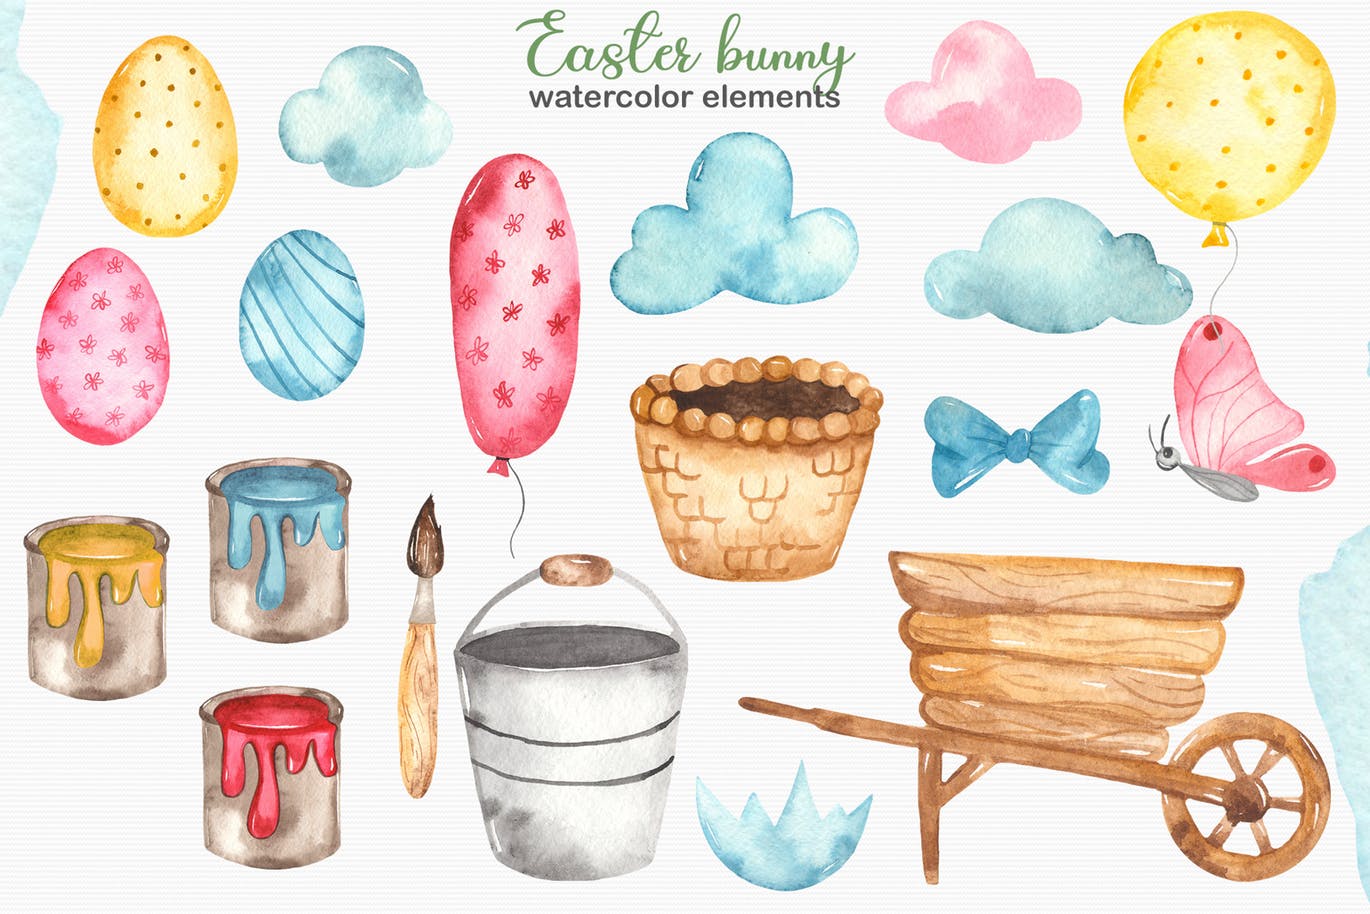 复活节兔子水彩手绘素材套装 Watercolor Easter Bunny collection插图(2)